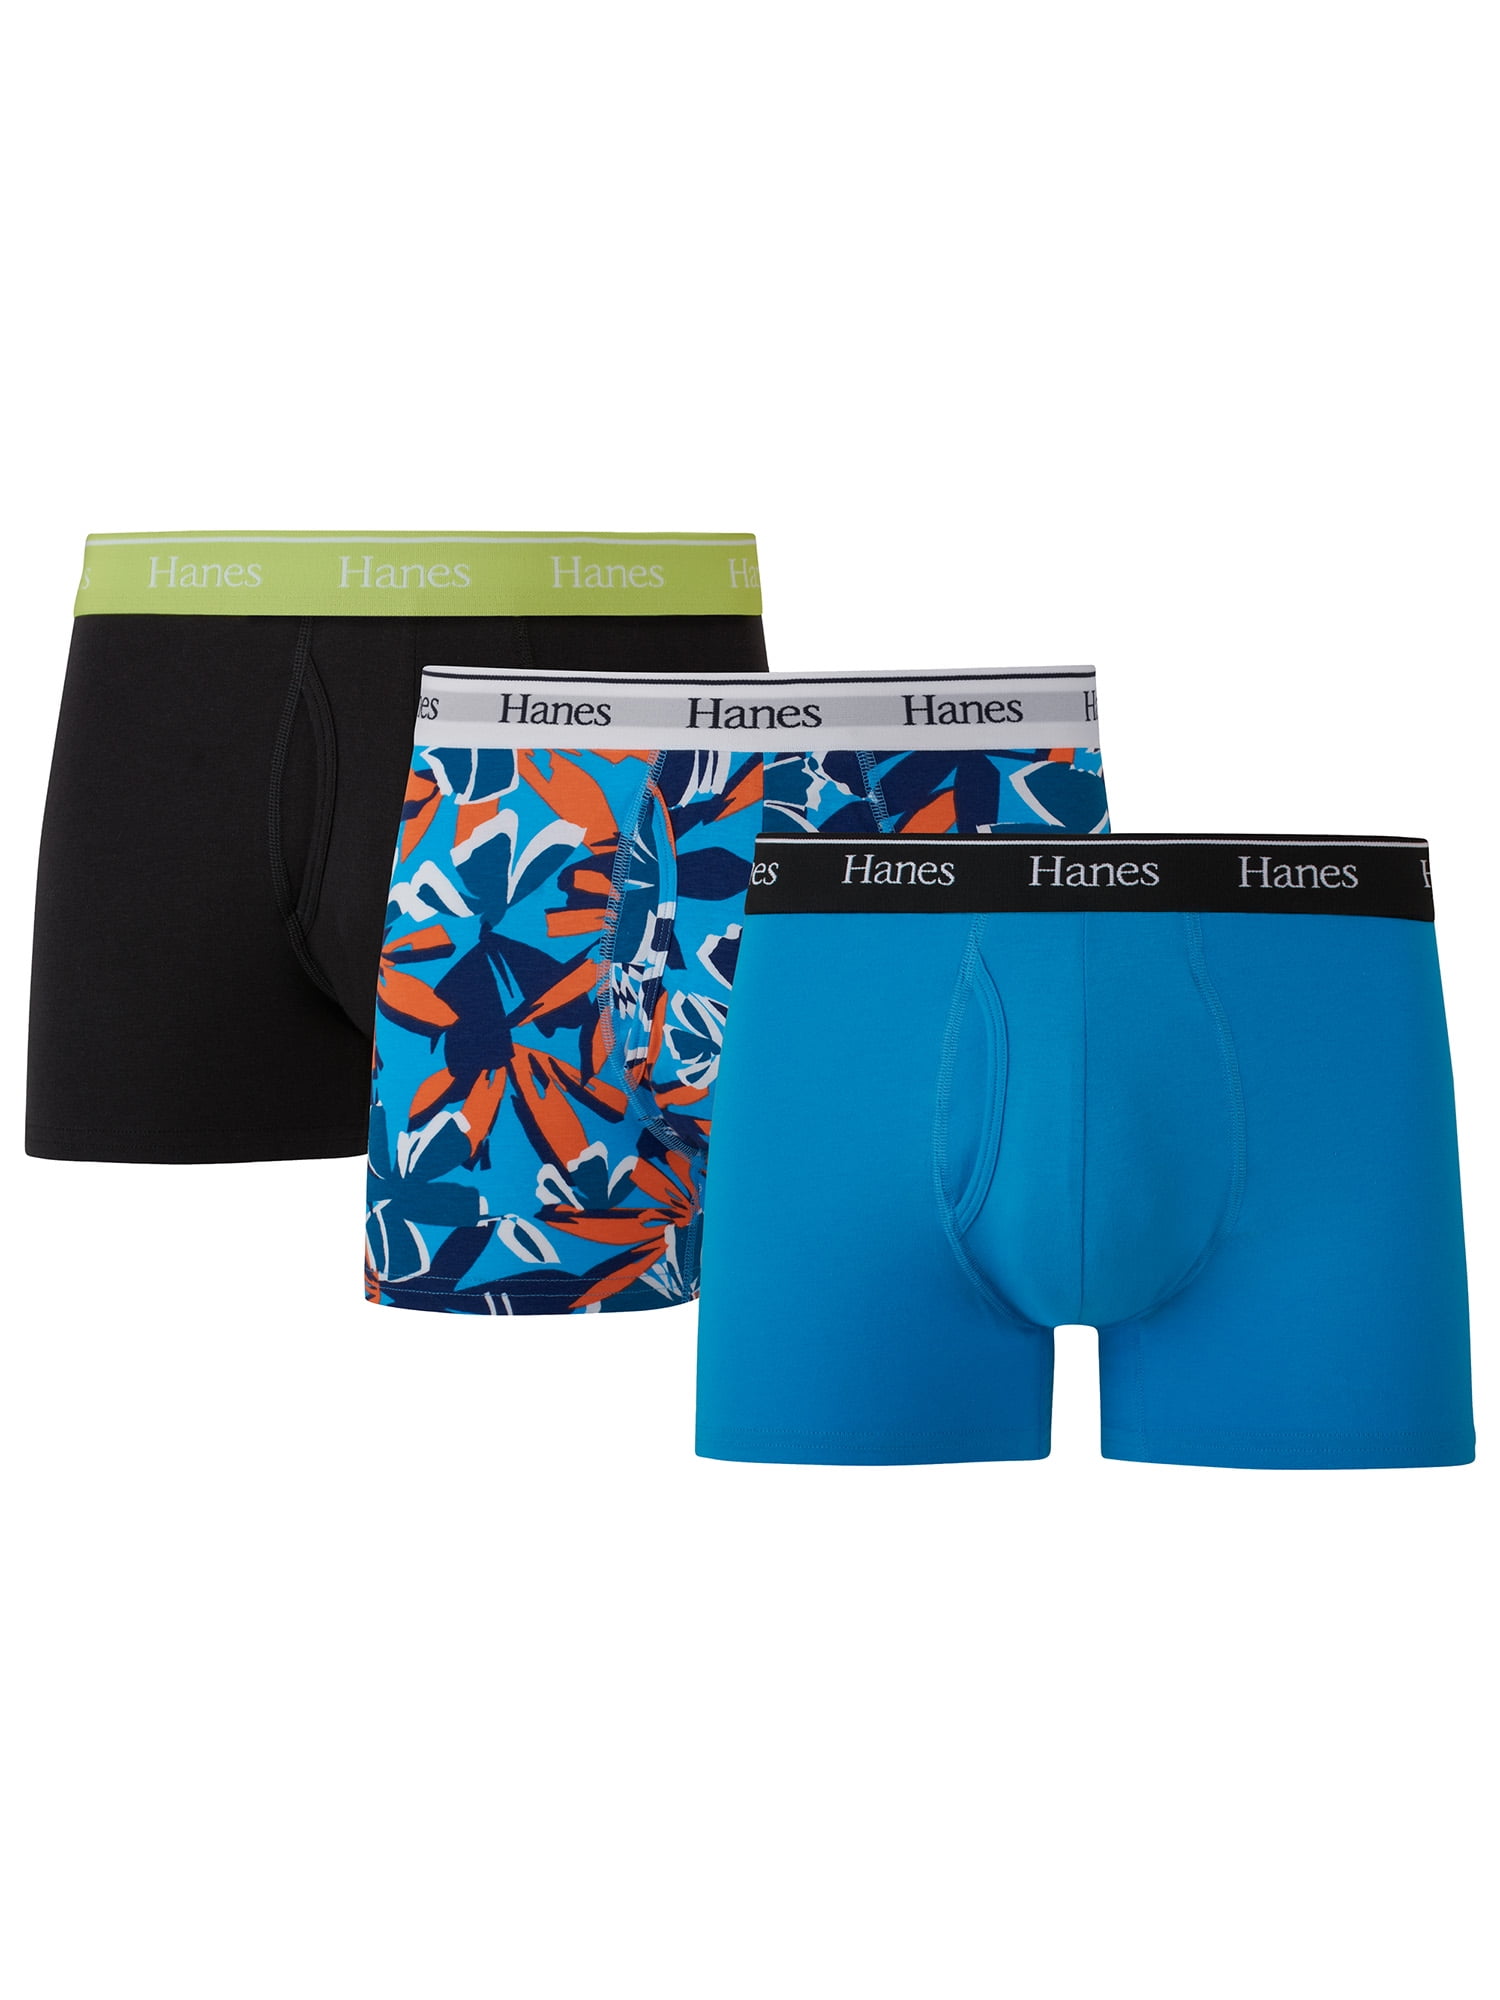 Hanes Originals Men's Underwear Trunks, Moisture-Wicking Stretch Cotton, 3- Pack 